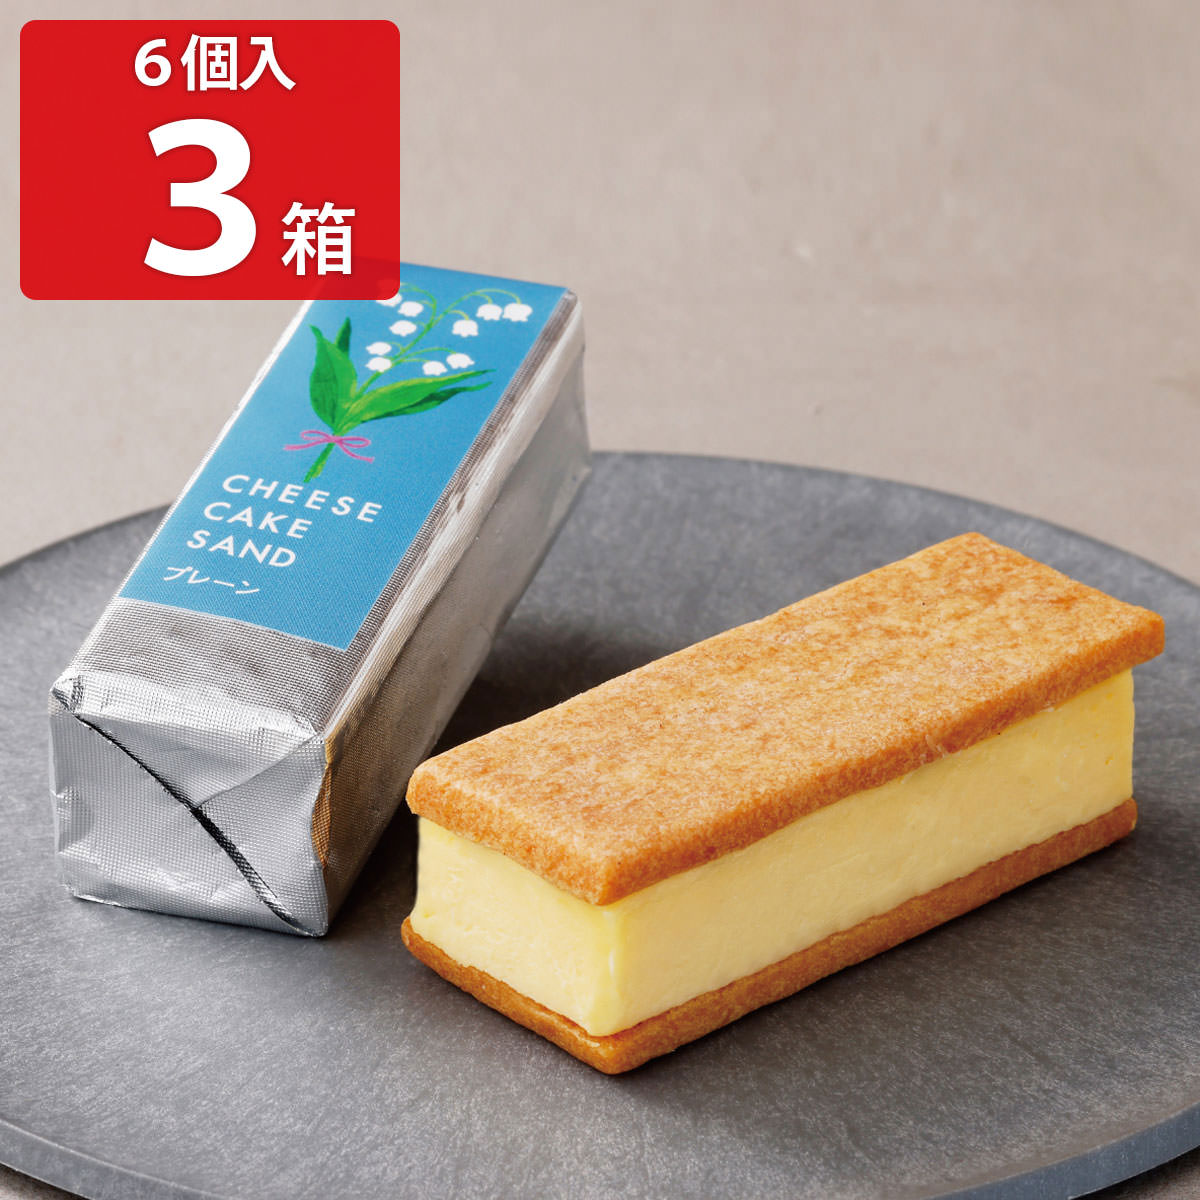 楽天産直お取り寄せニッポンセレクトチーズケーキサンド -CHEESECAKE SAND- プレーン 6個入3箱セット クッキーサンド 洋菓子 スイーツ デザート おやつ ケーキ お菓子